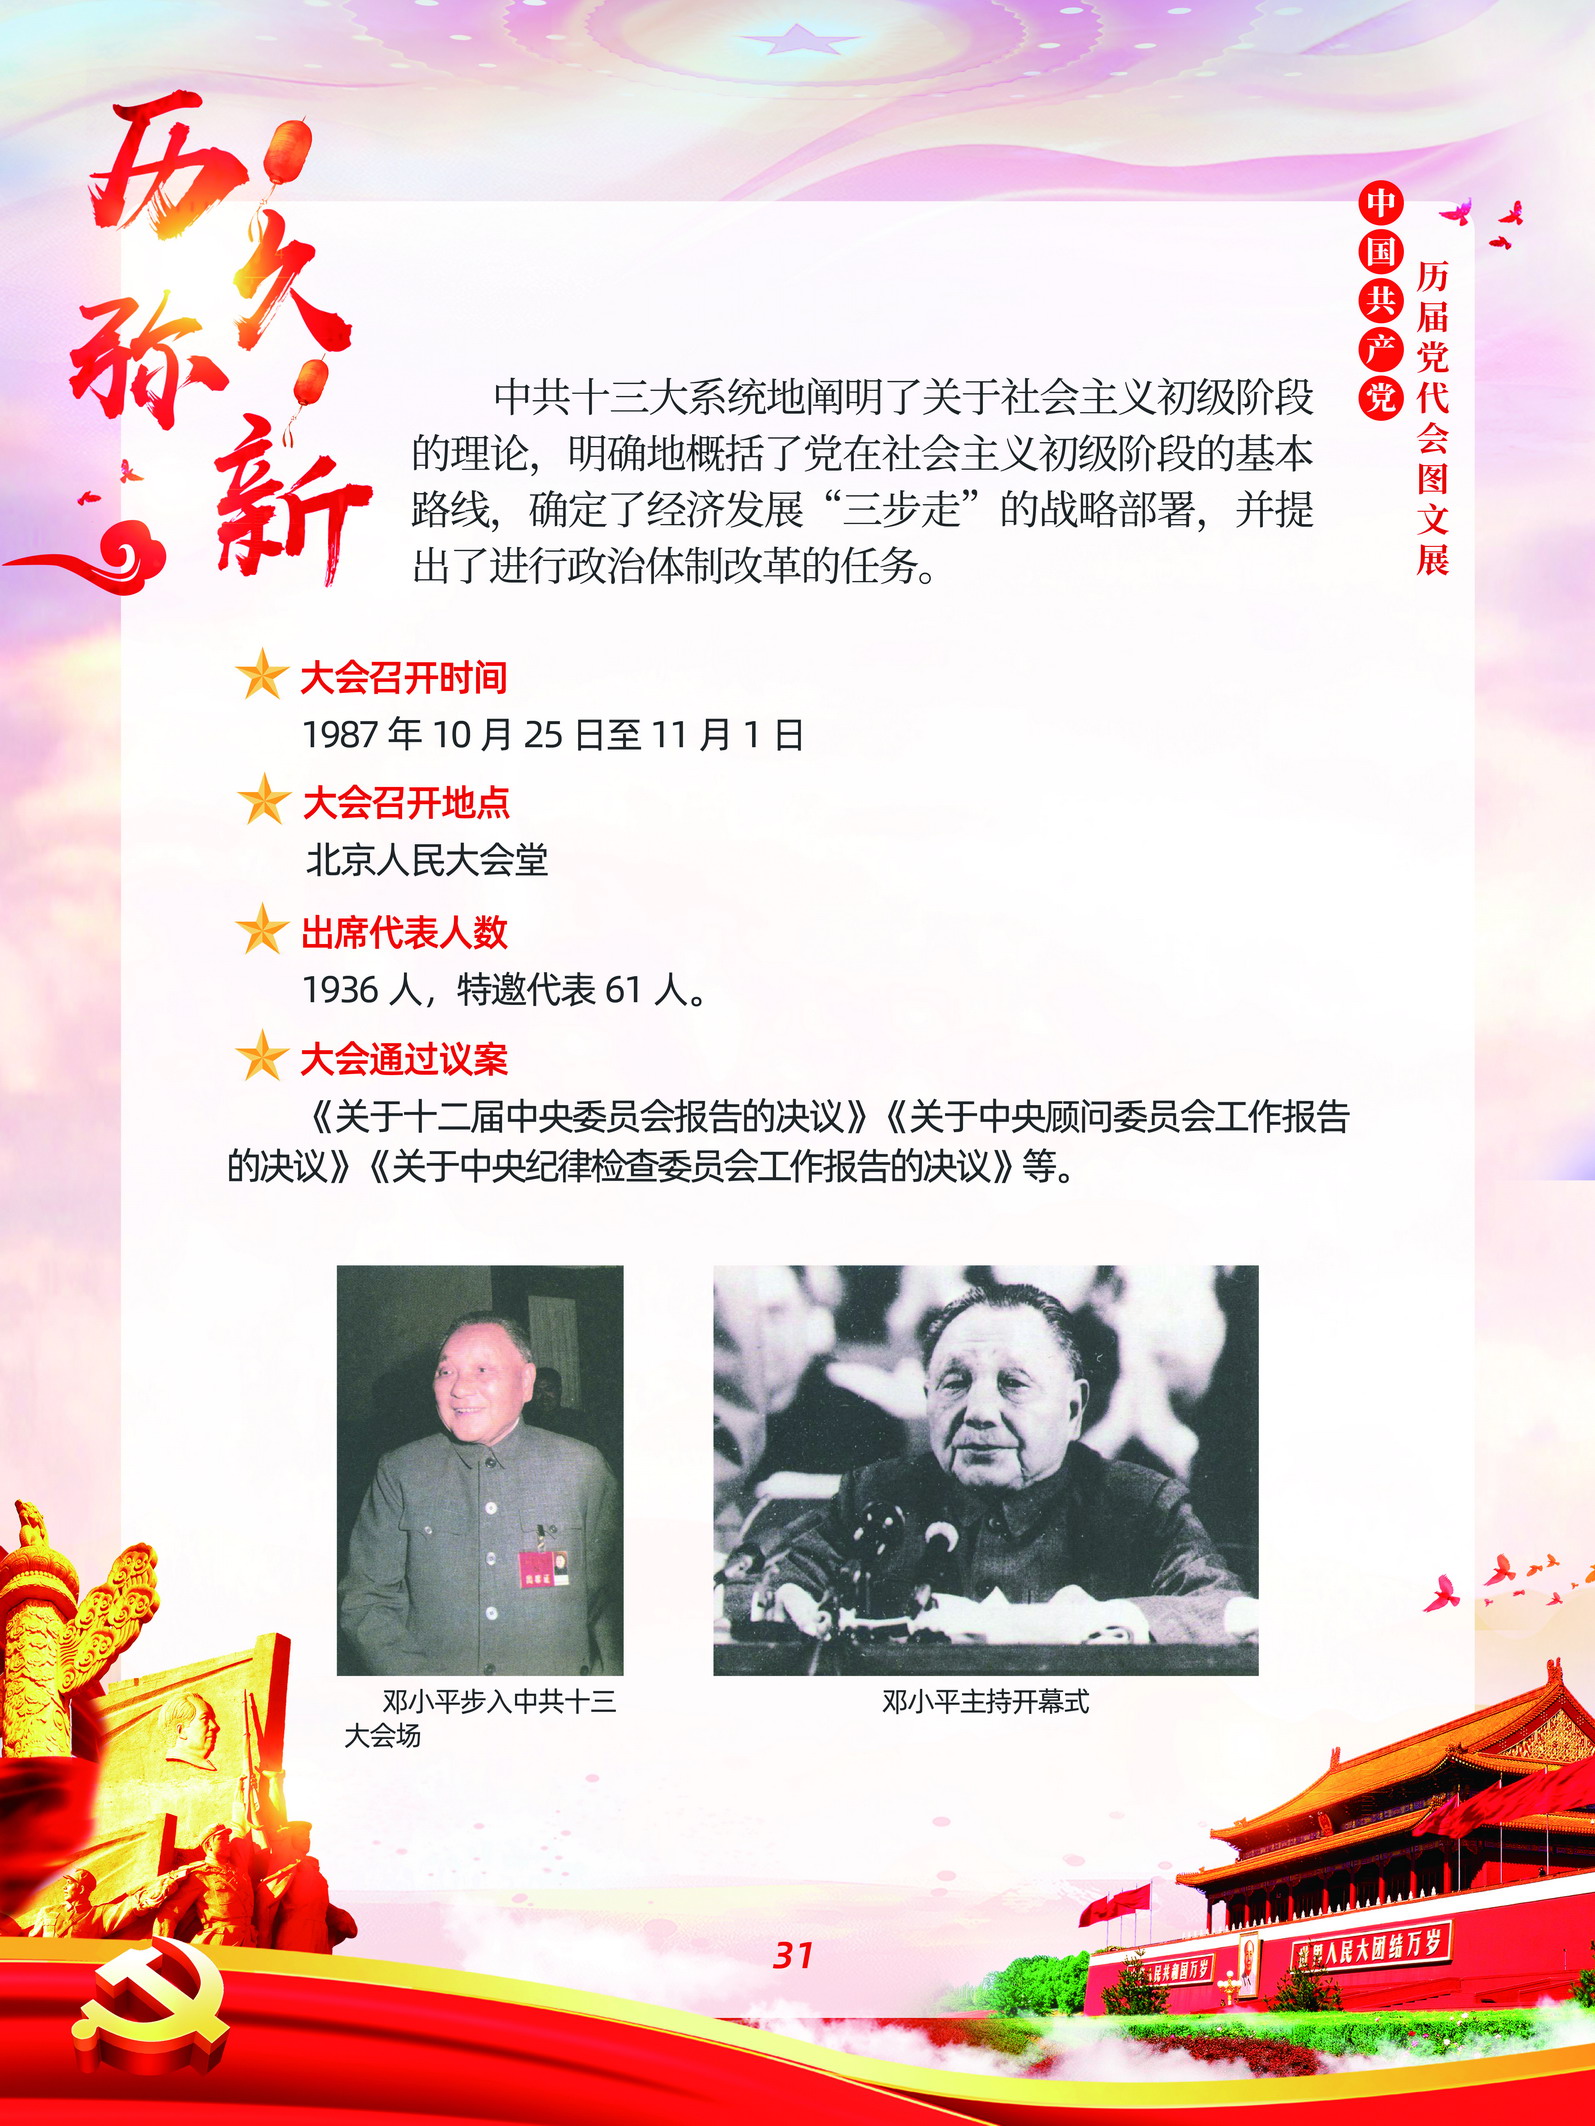 中国共产党历届党代会图文展_图30